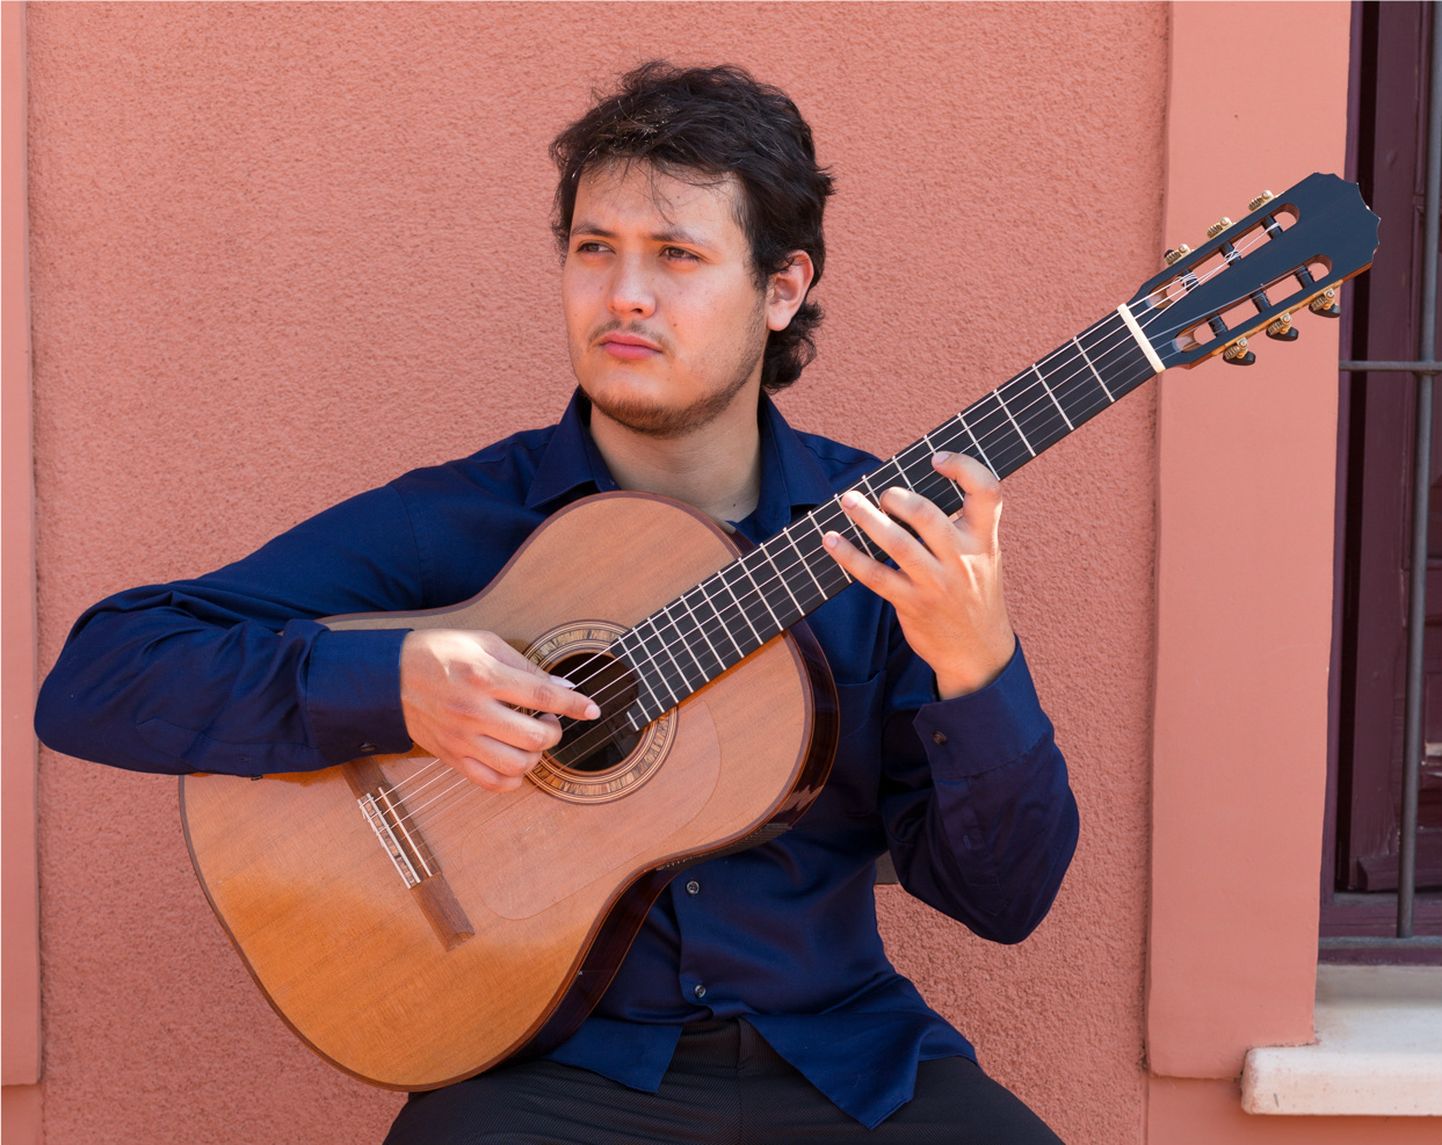 13. juunil mängib Jõhvi kontserdimajas eksootilist muusikat Balkanilt ja Lõuna-Ameerikast Mehhiko kitarrist Misael Barraza-Diaz.